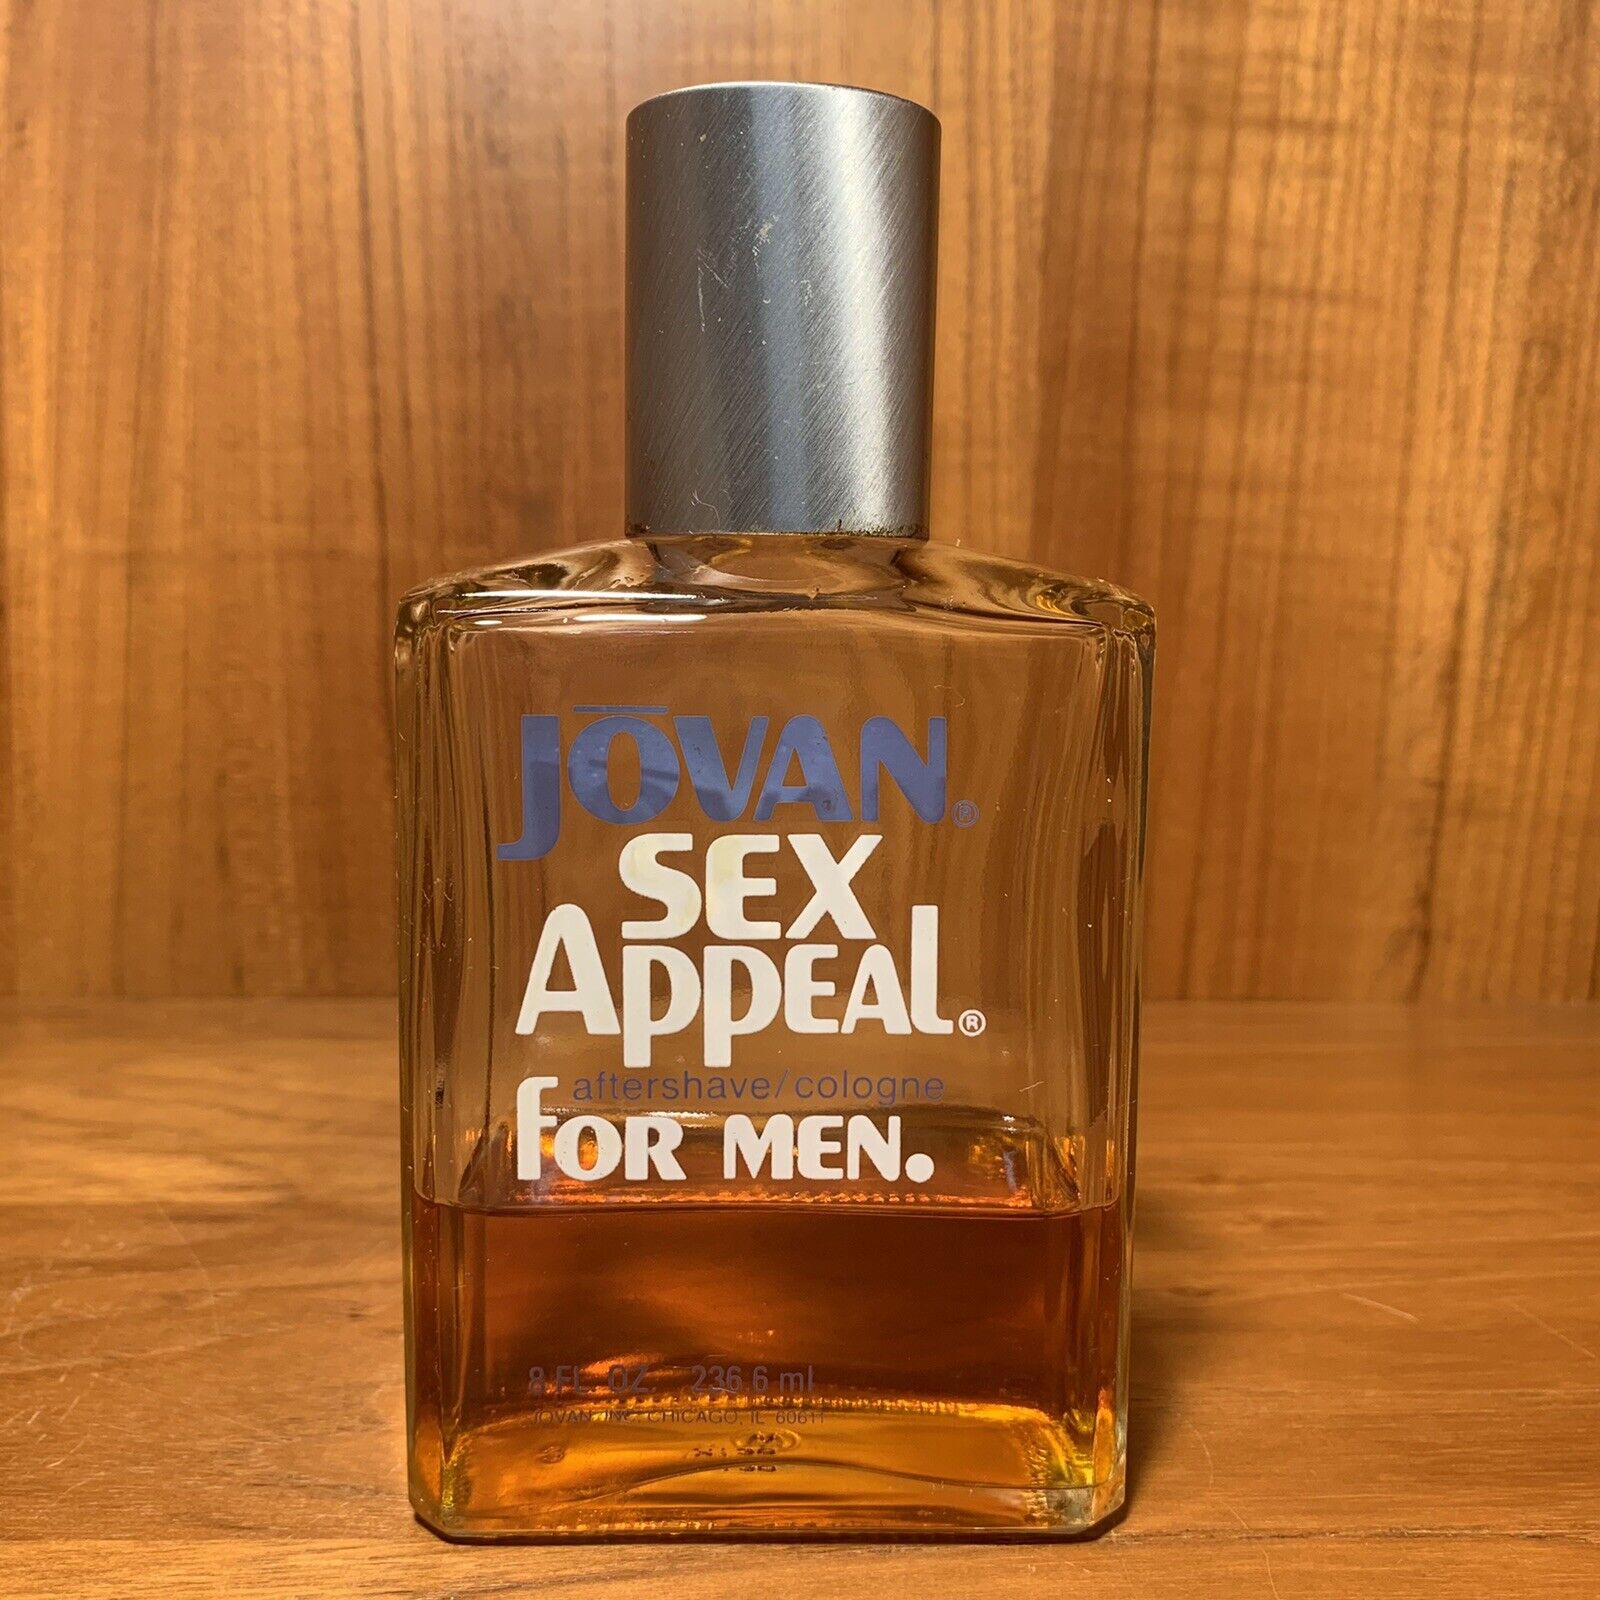 JOVAN SEX APPEAL for Men After Shave / Cologne Splash 8 fl oz Giant 40% Vintage